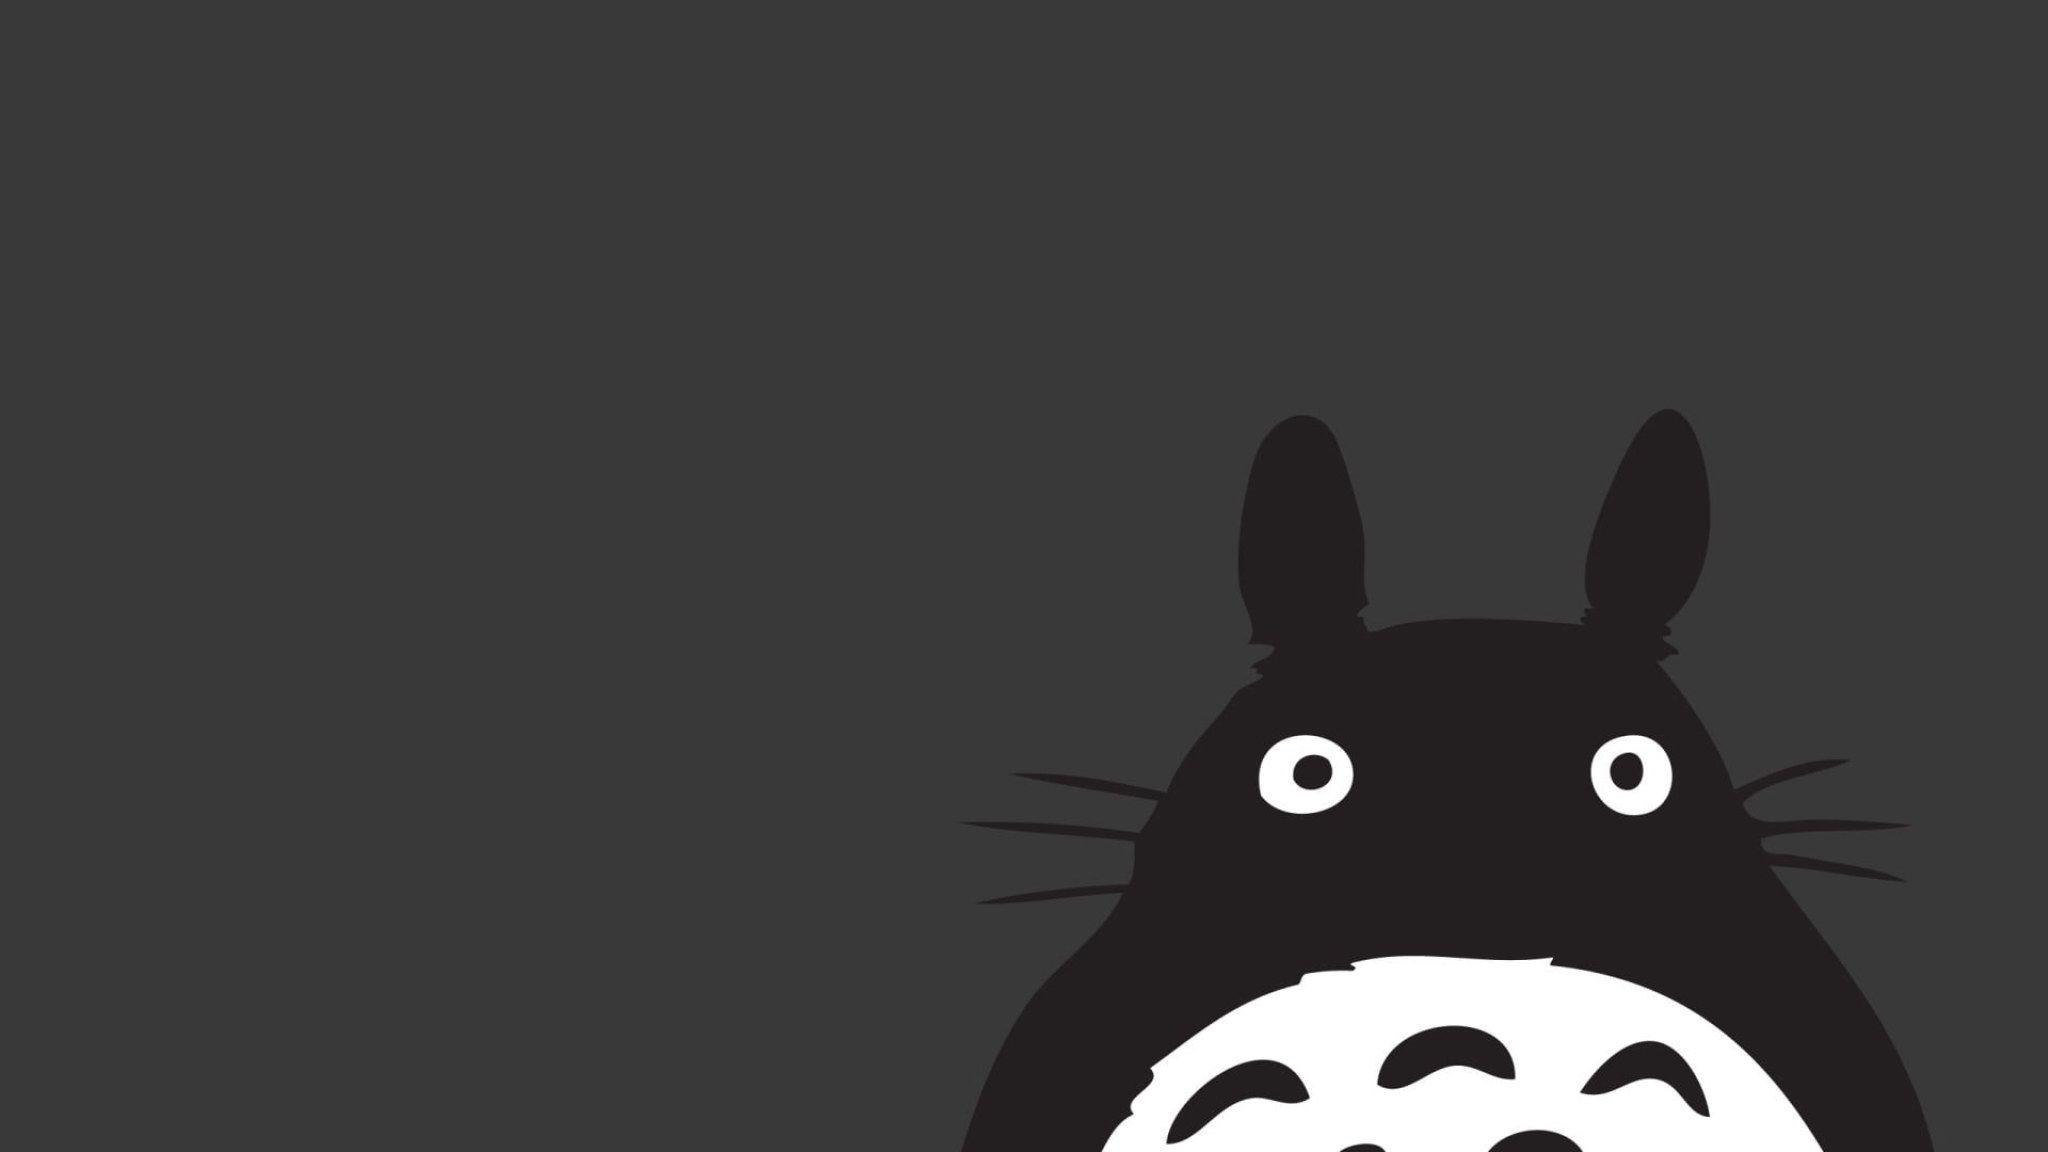 2048x1152 Hình nền Totoro hàng xóm của tôi, Anime, Studio Ghibli, Màu xám, Chủ nghĩa tối giản • Hình nền cho bạn Hình nền HD cho máy tính để bàn & di động